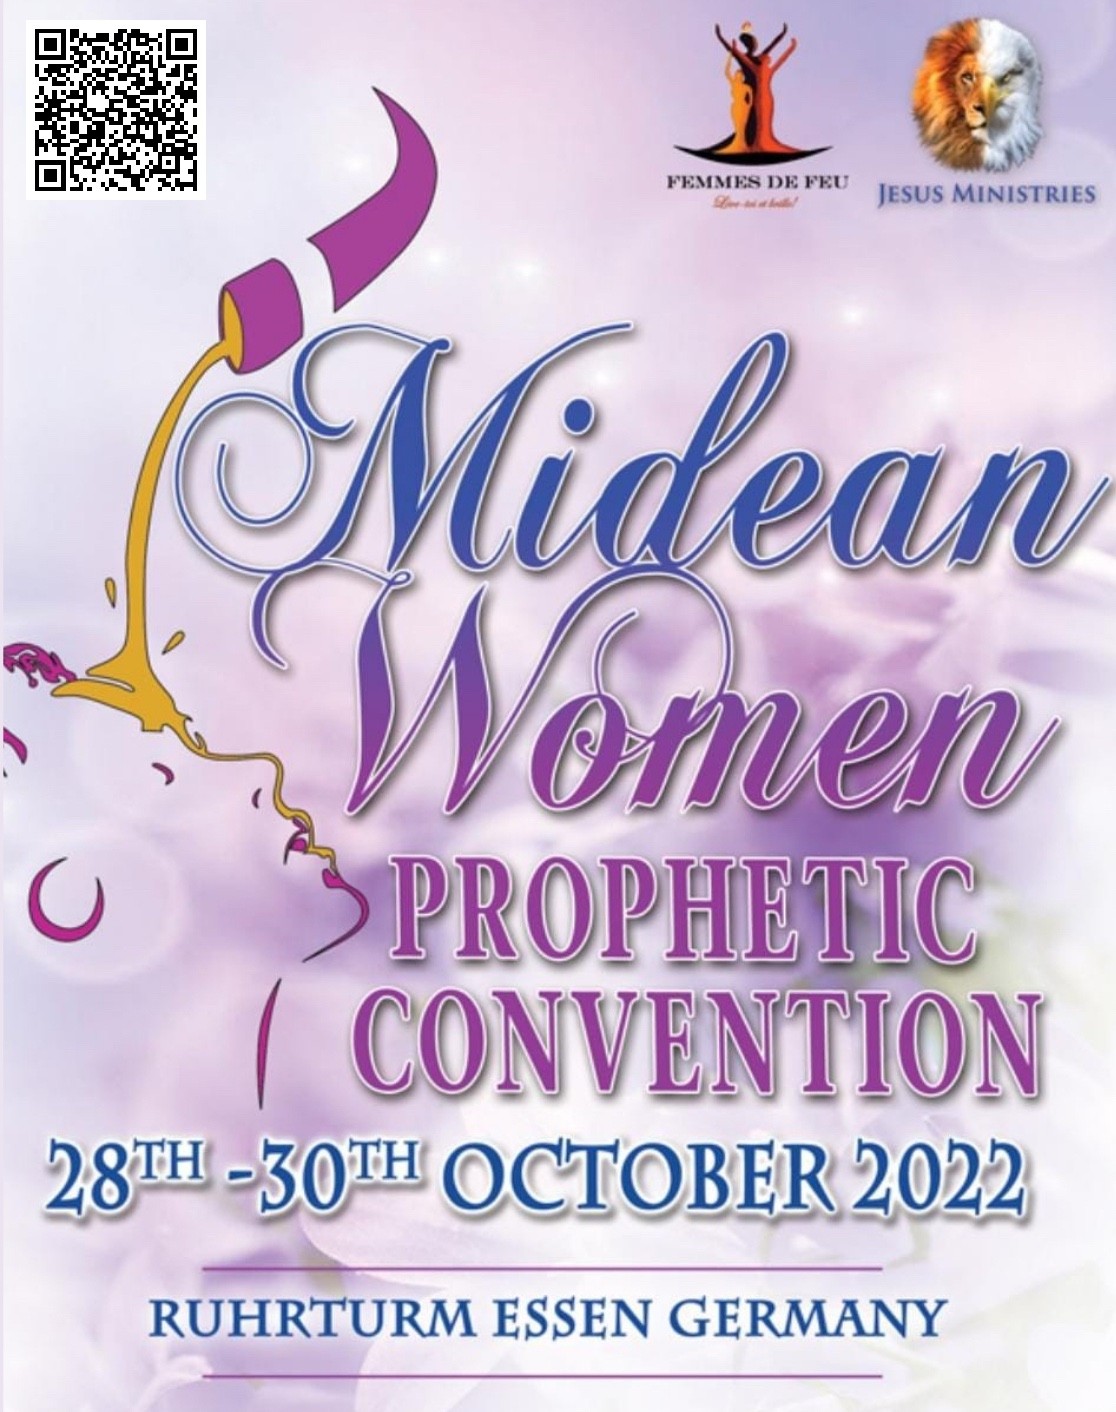 MIDEAN Women Prophetic Convention